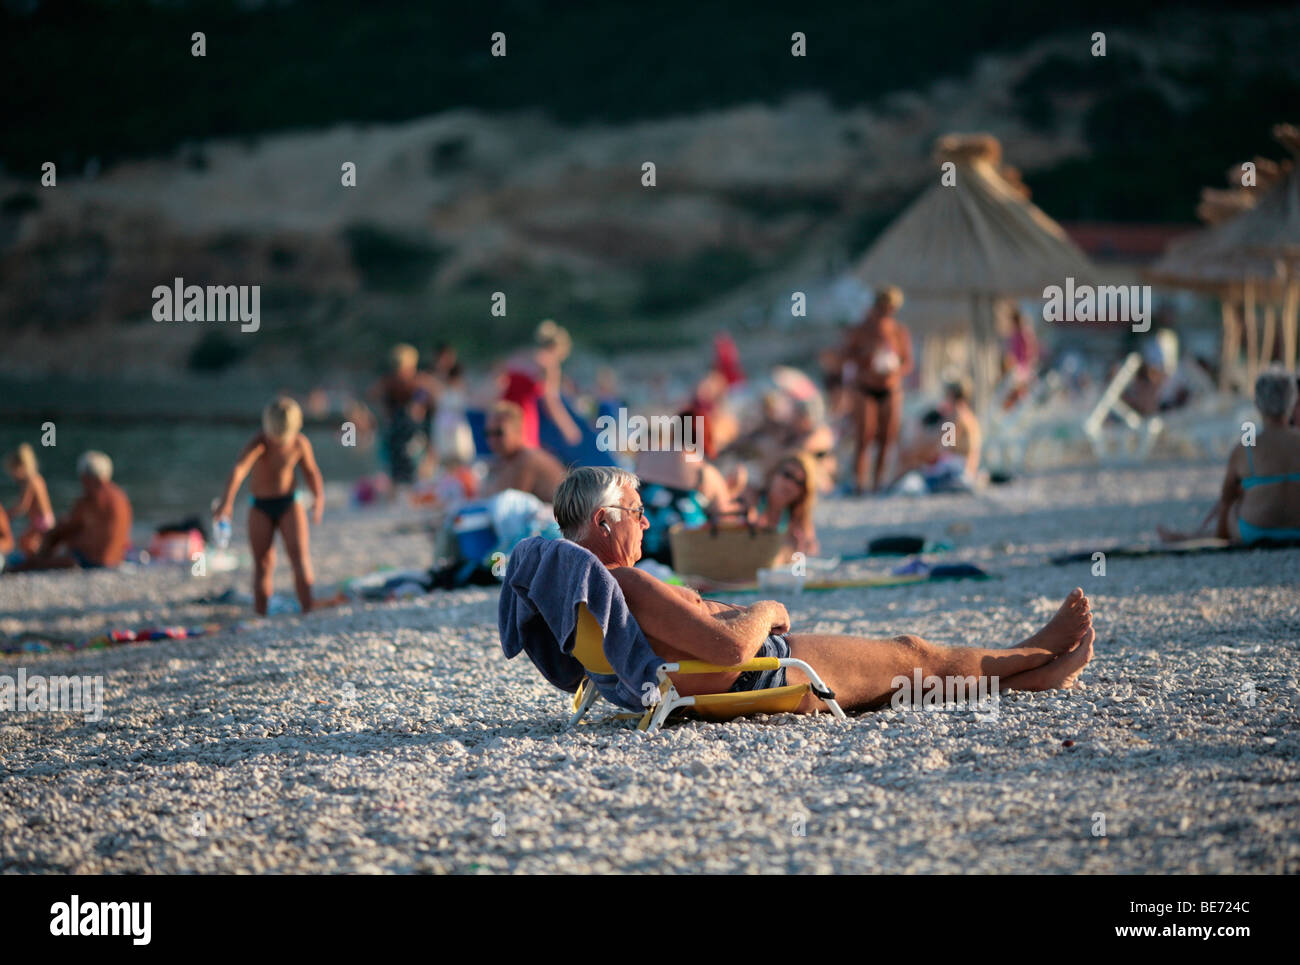 elderly man sunbathing in evening sun, bask, krk island, croatia Stock Photo